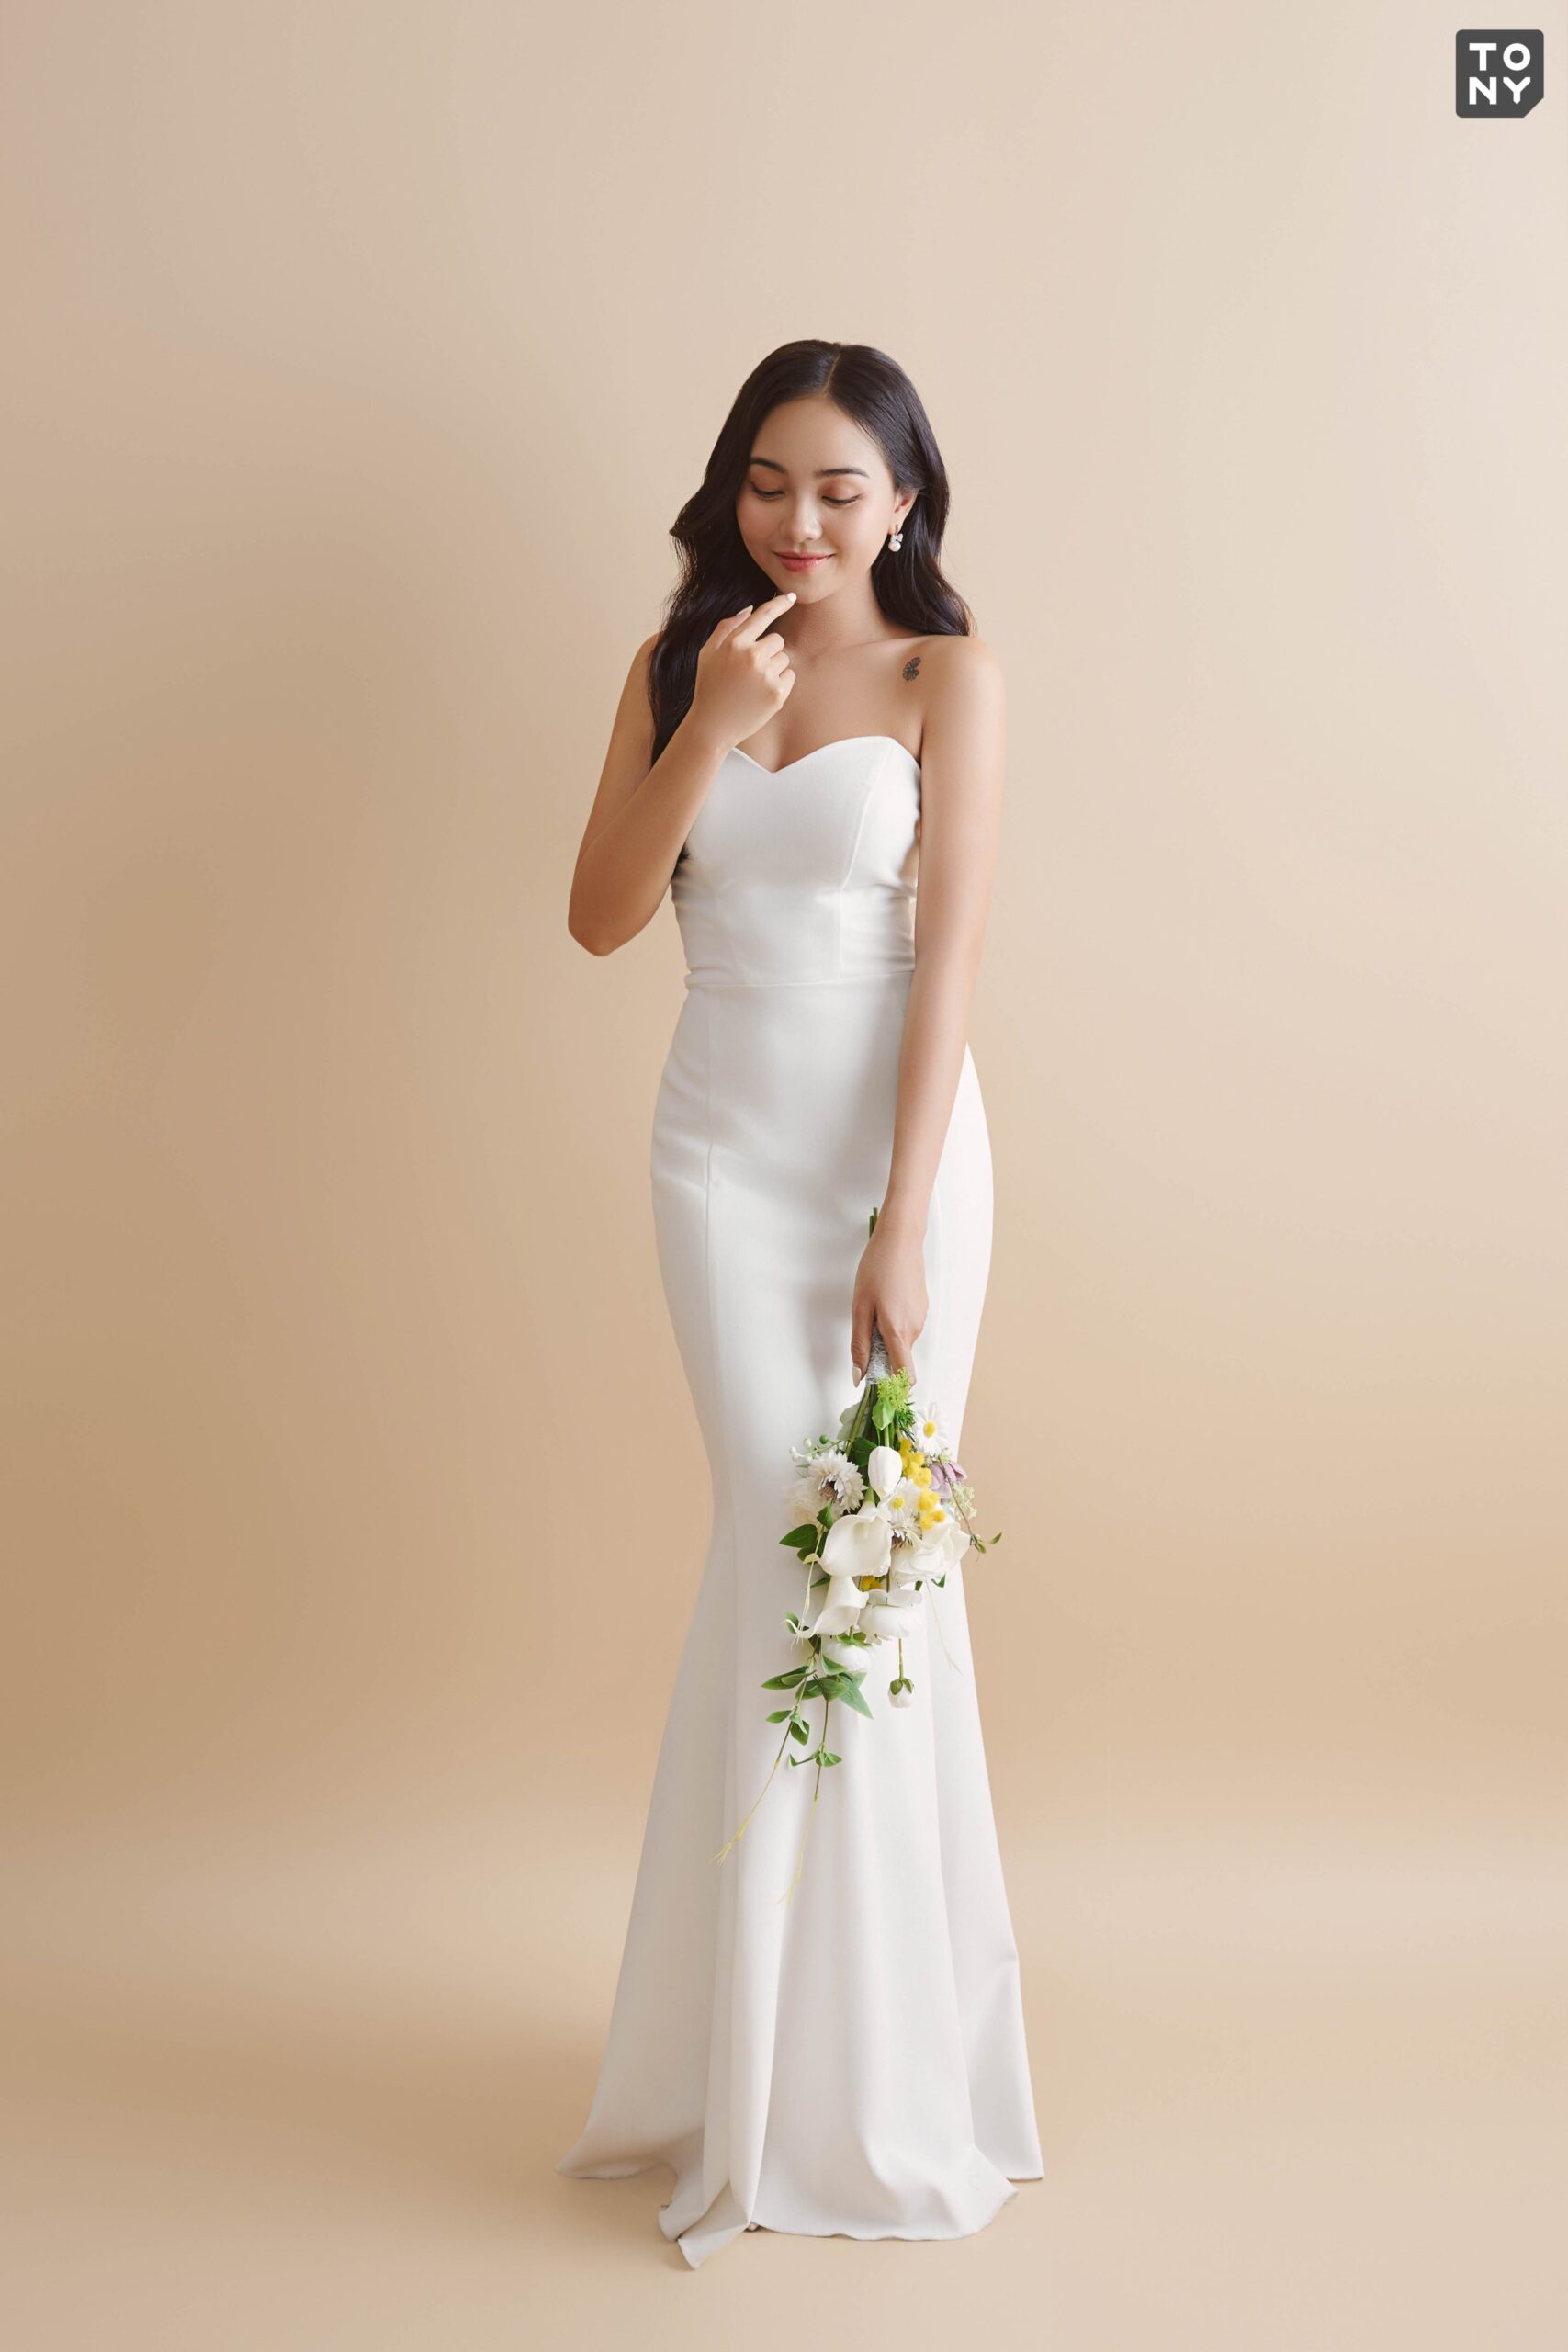 6 loại vải phổ biến để may váy cưới mà cô dâu cần biết